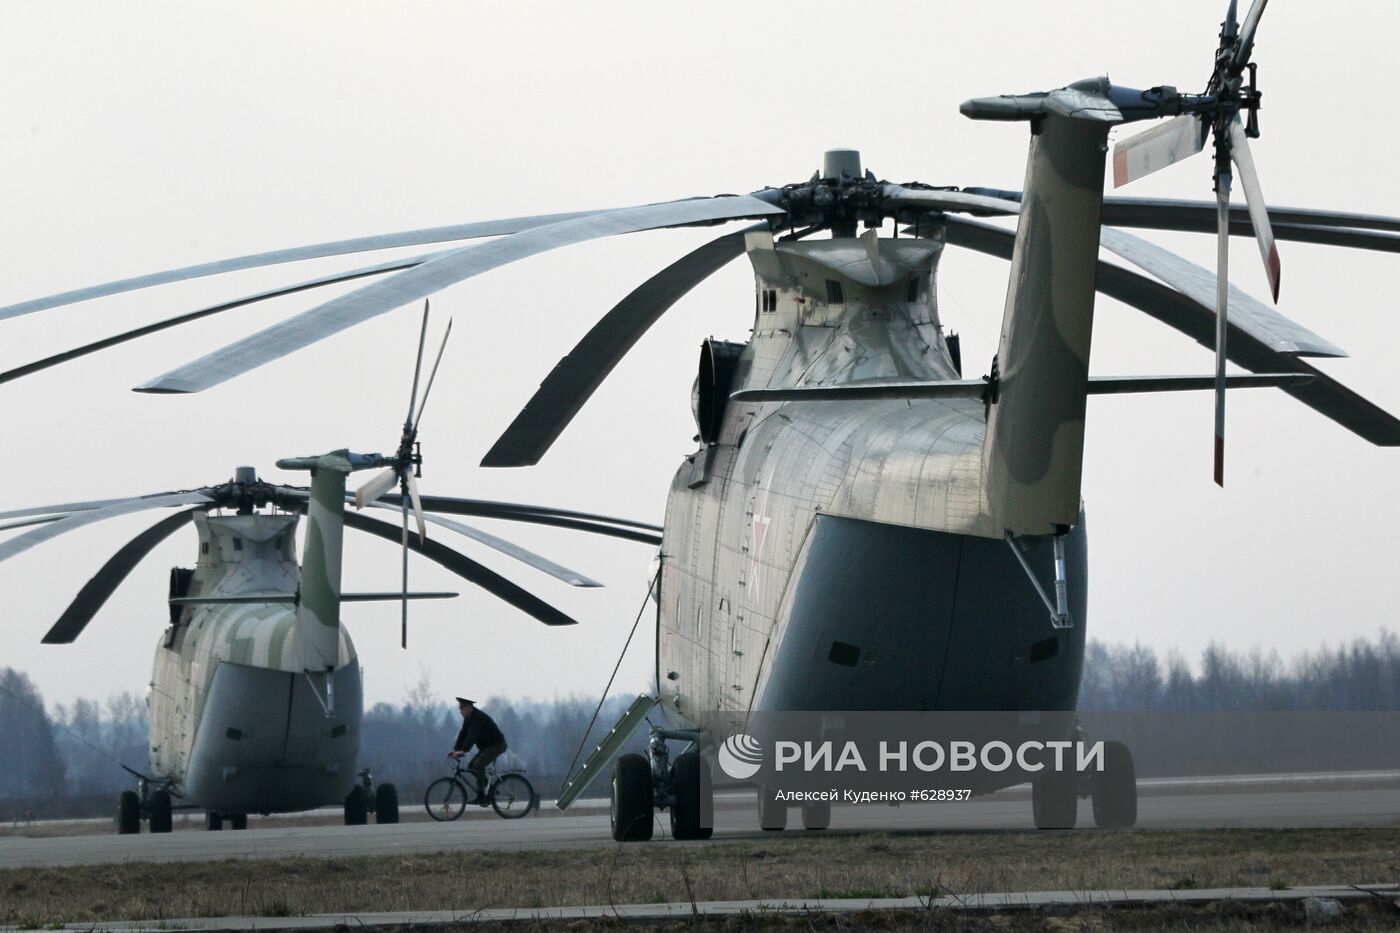 Транспортный вертолет Ми-26